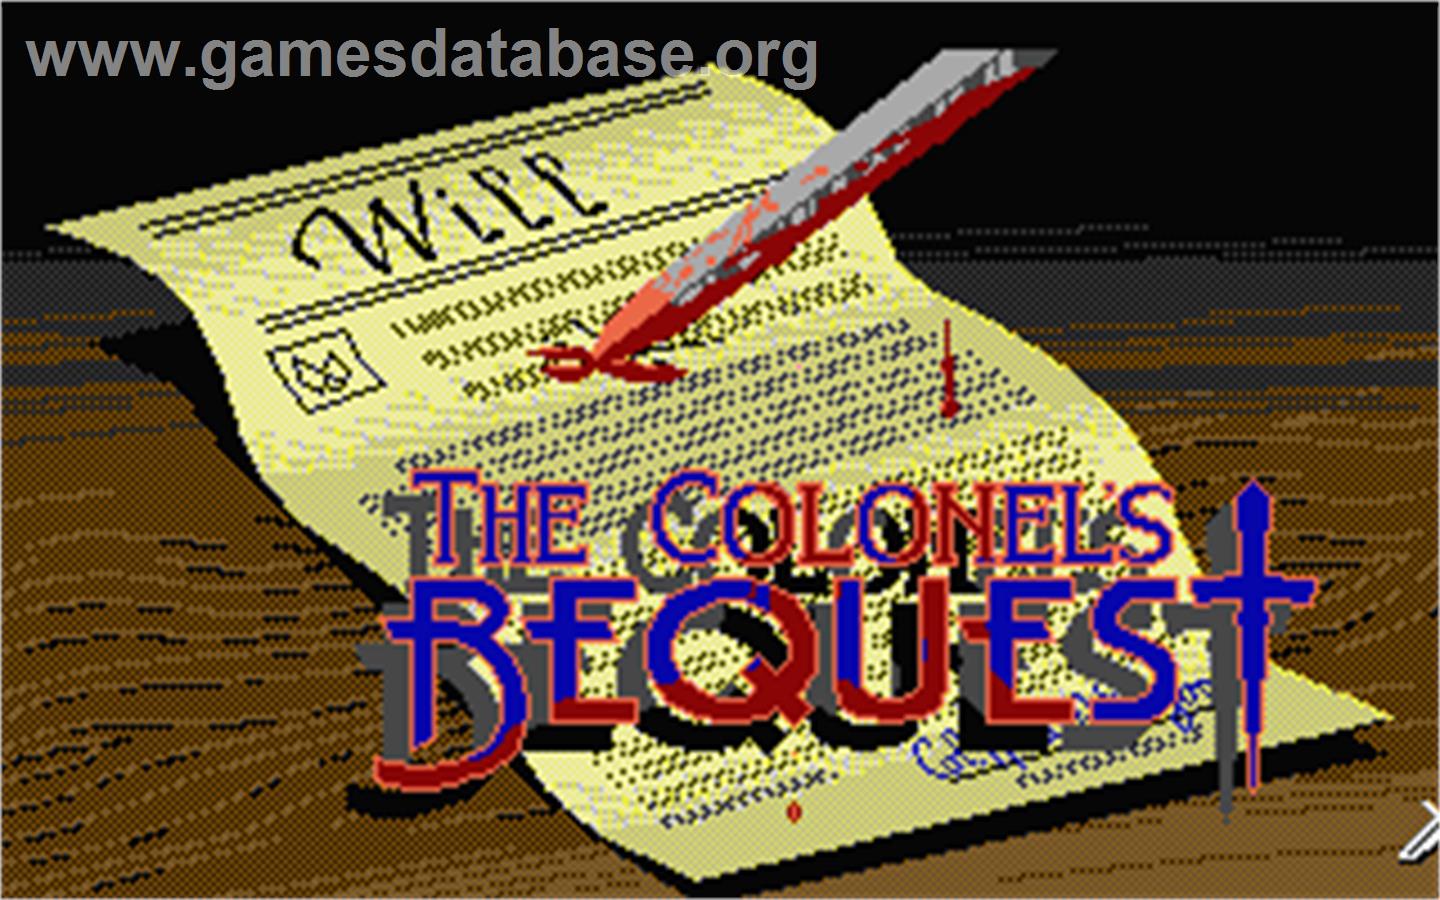 Colonel's Bequest - Atari ST - Artwork - Title Screen